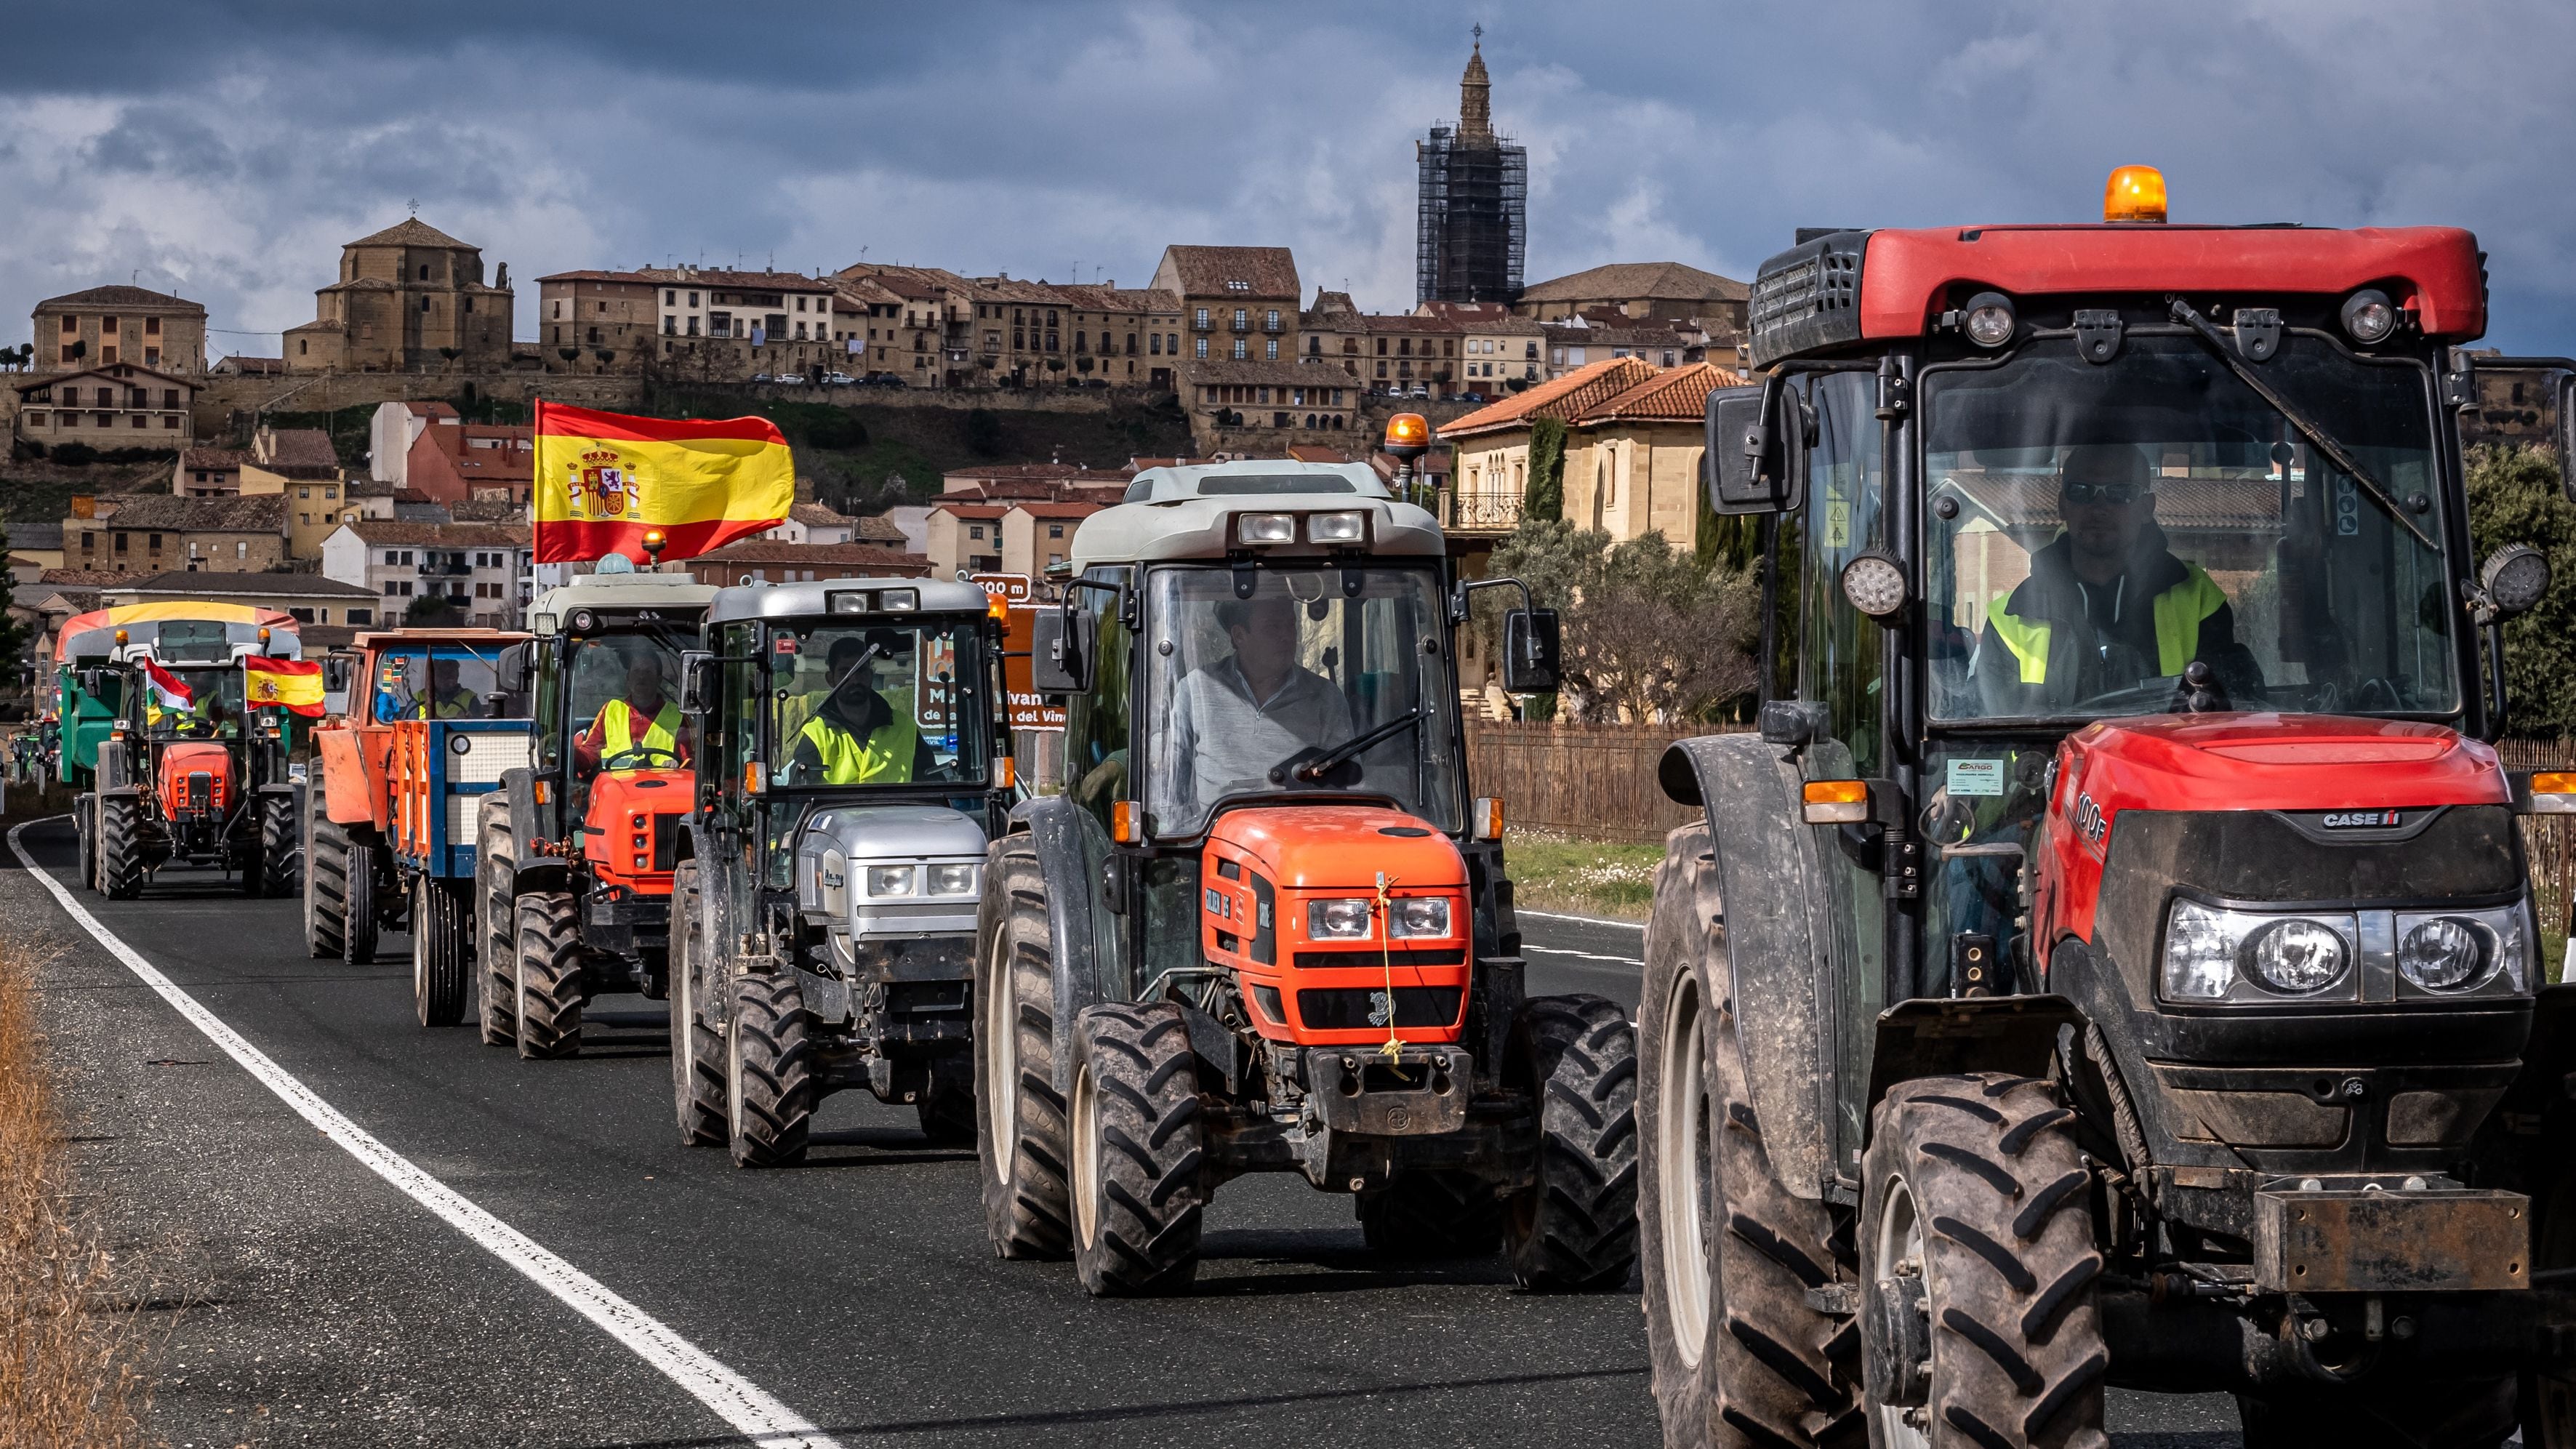 Terminan las protestas de los agricultores en La Rioja